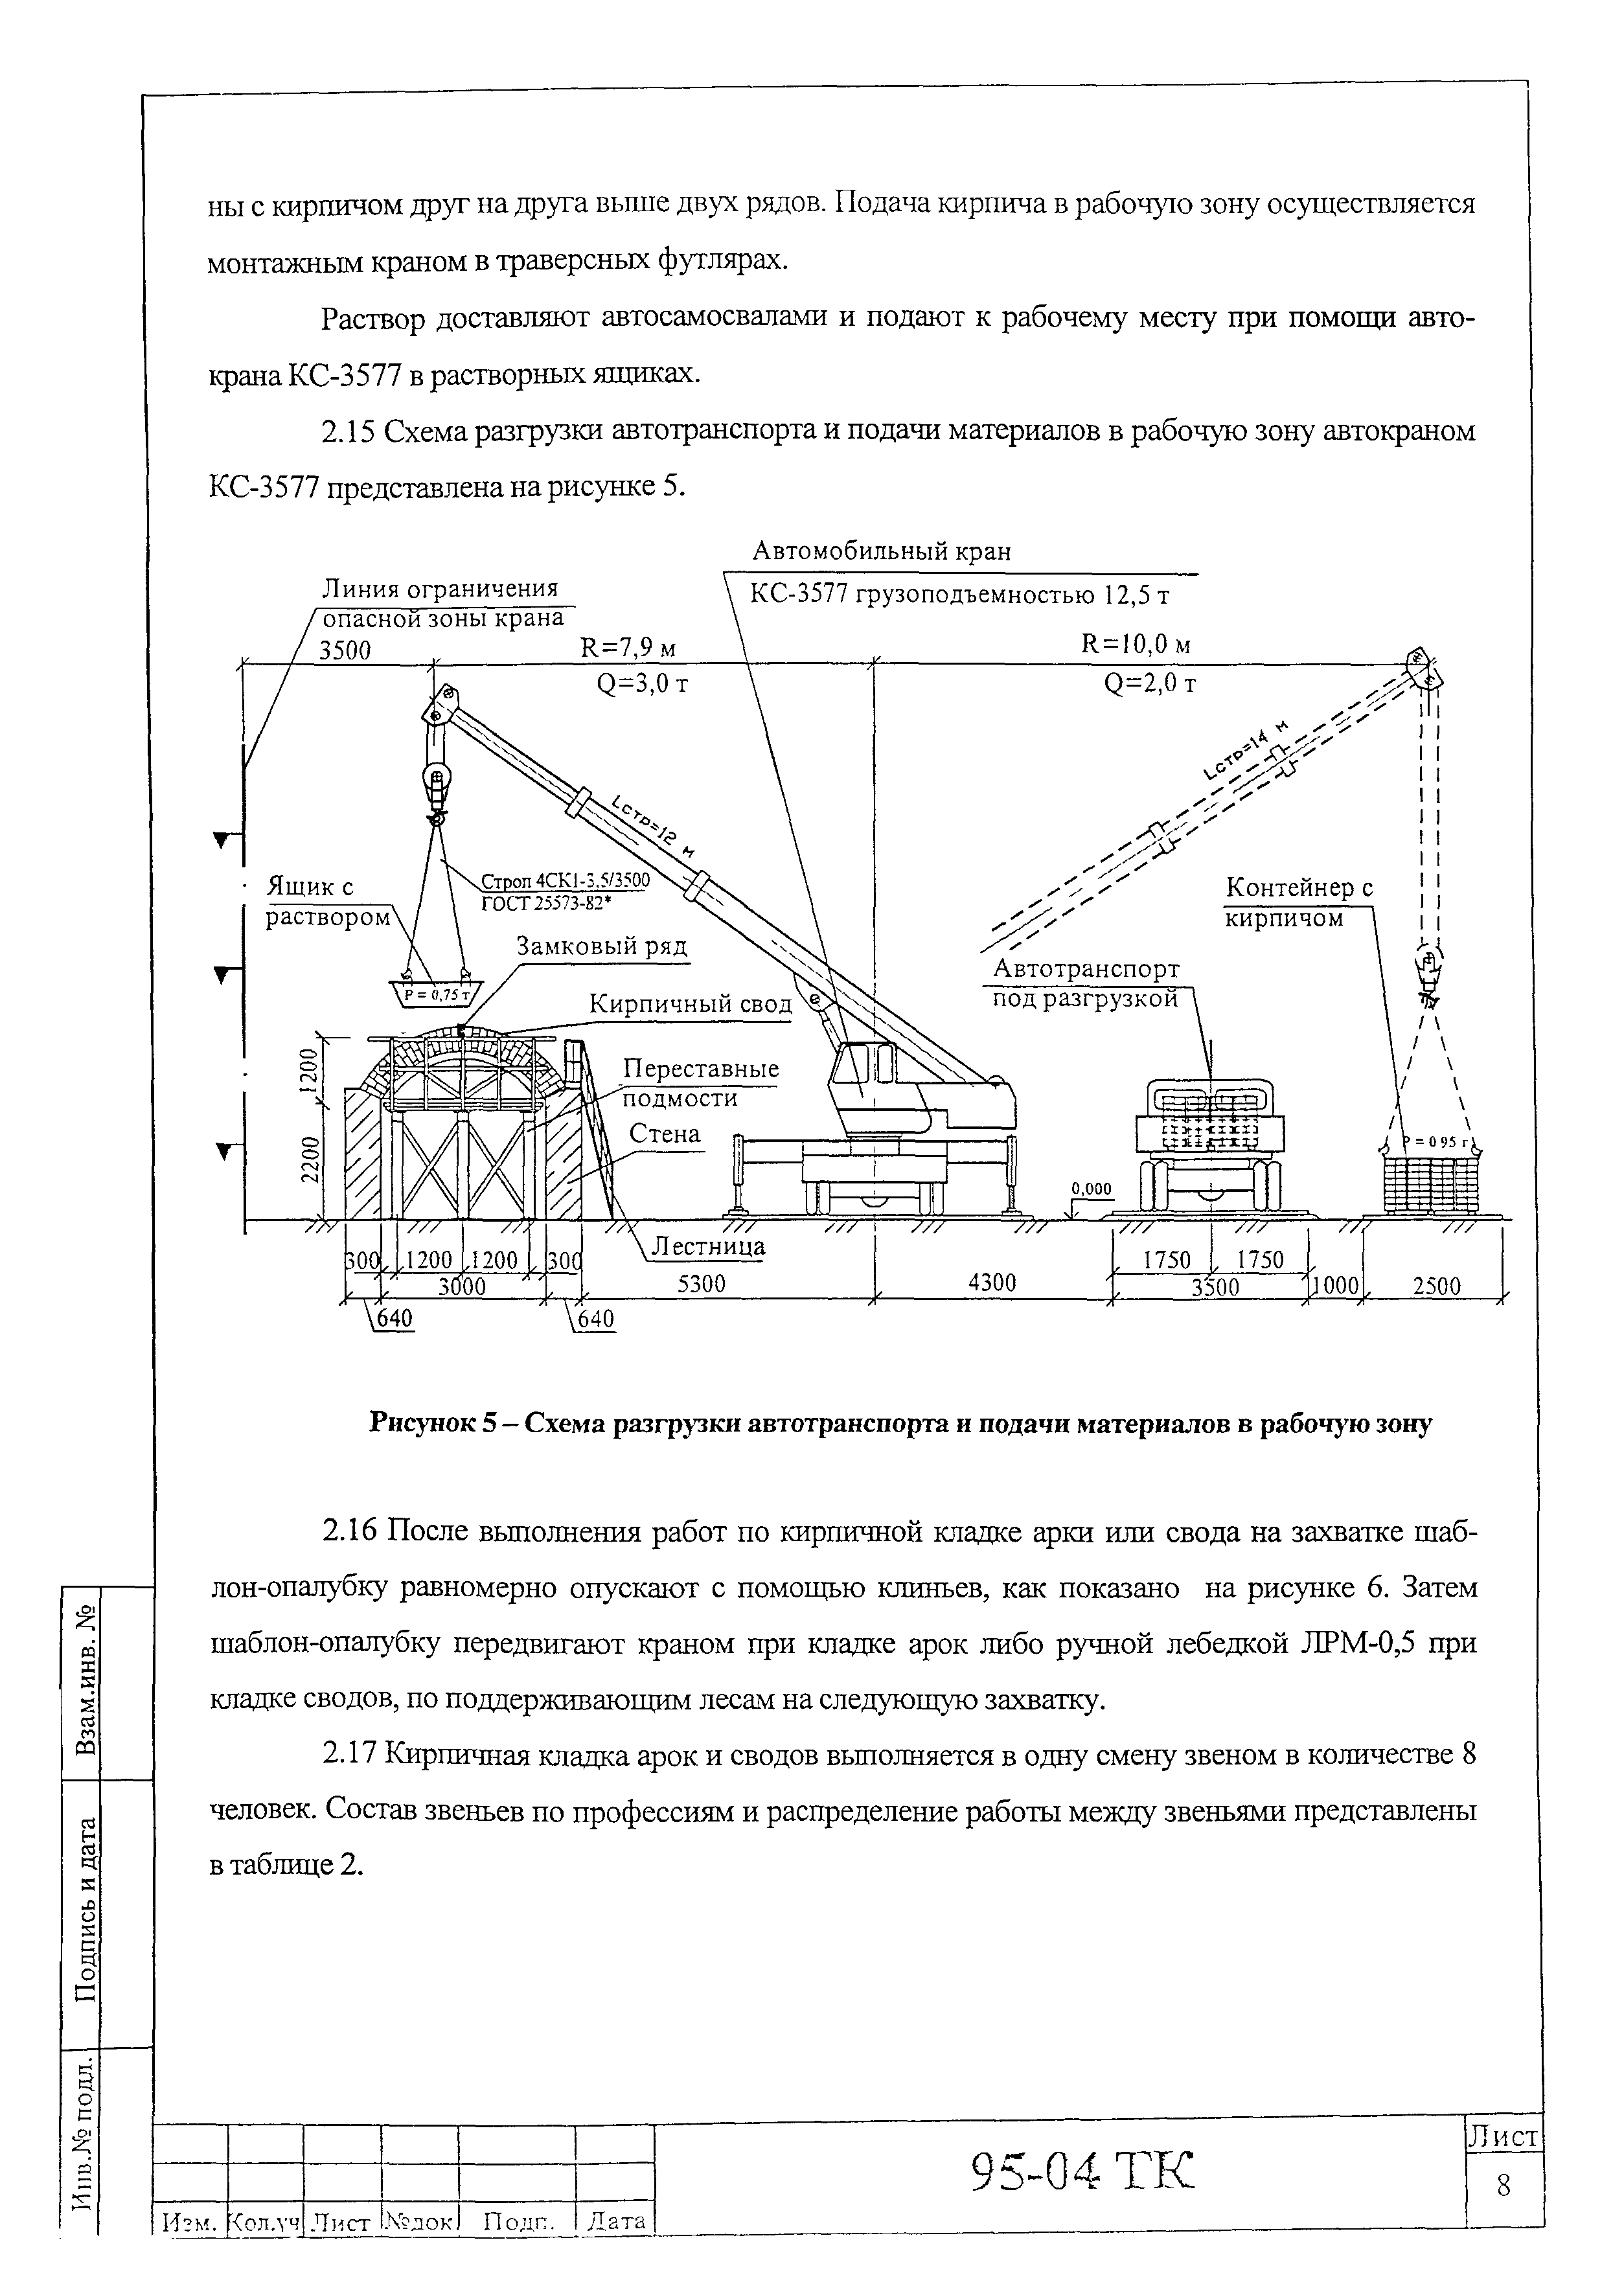 Технологическая карта 95-04 ТК